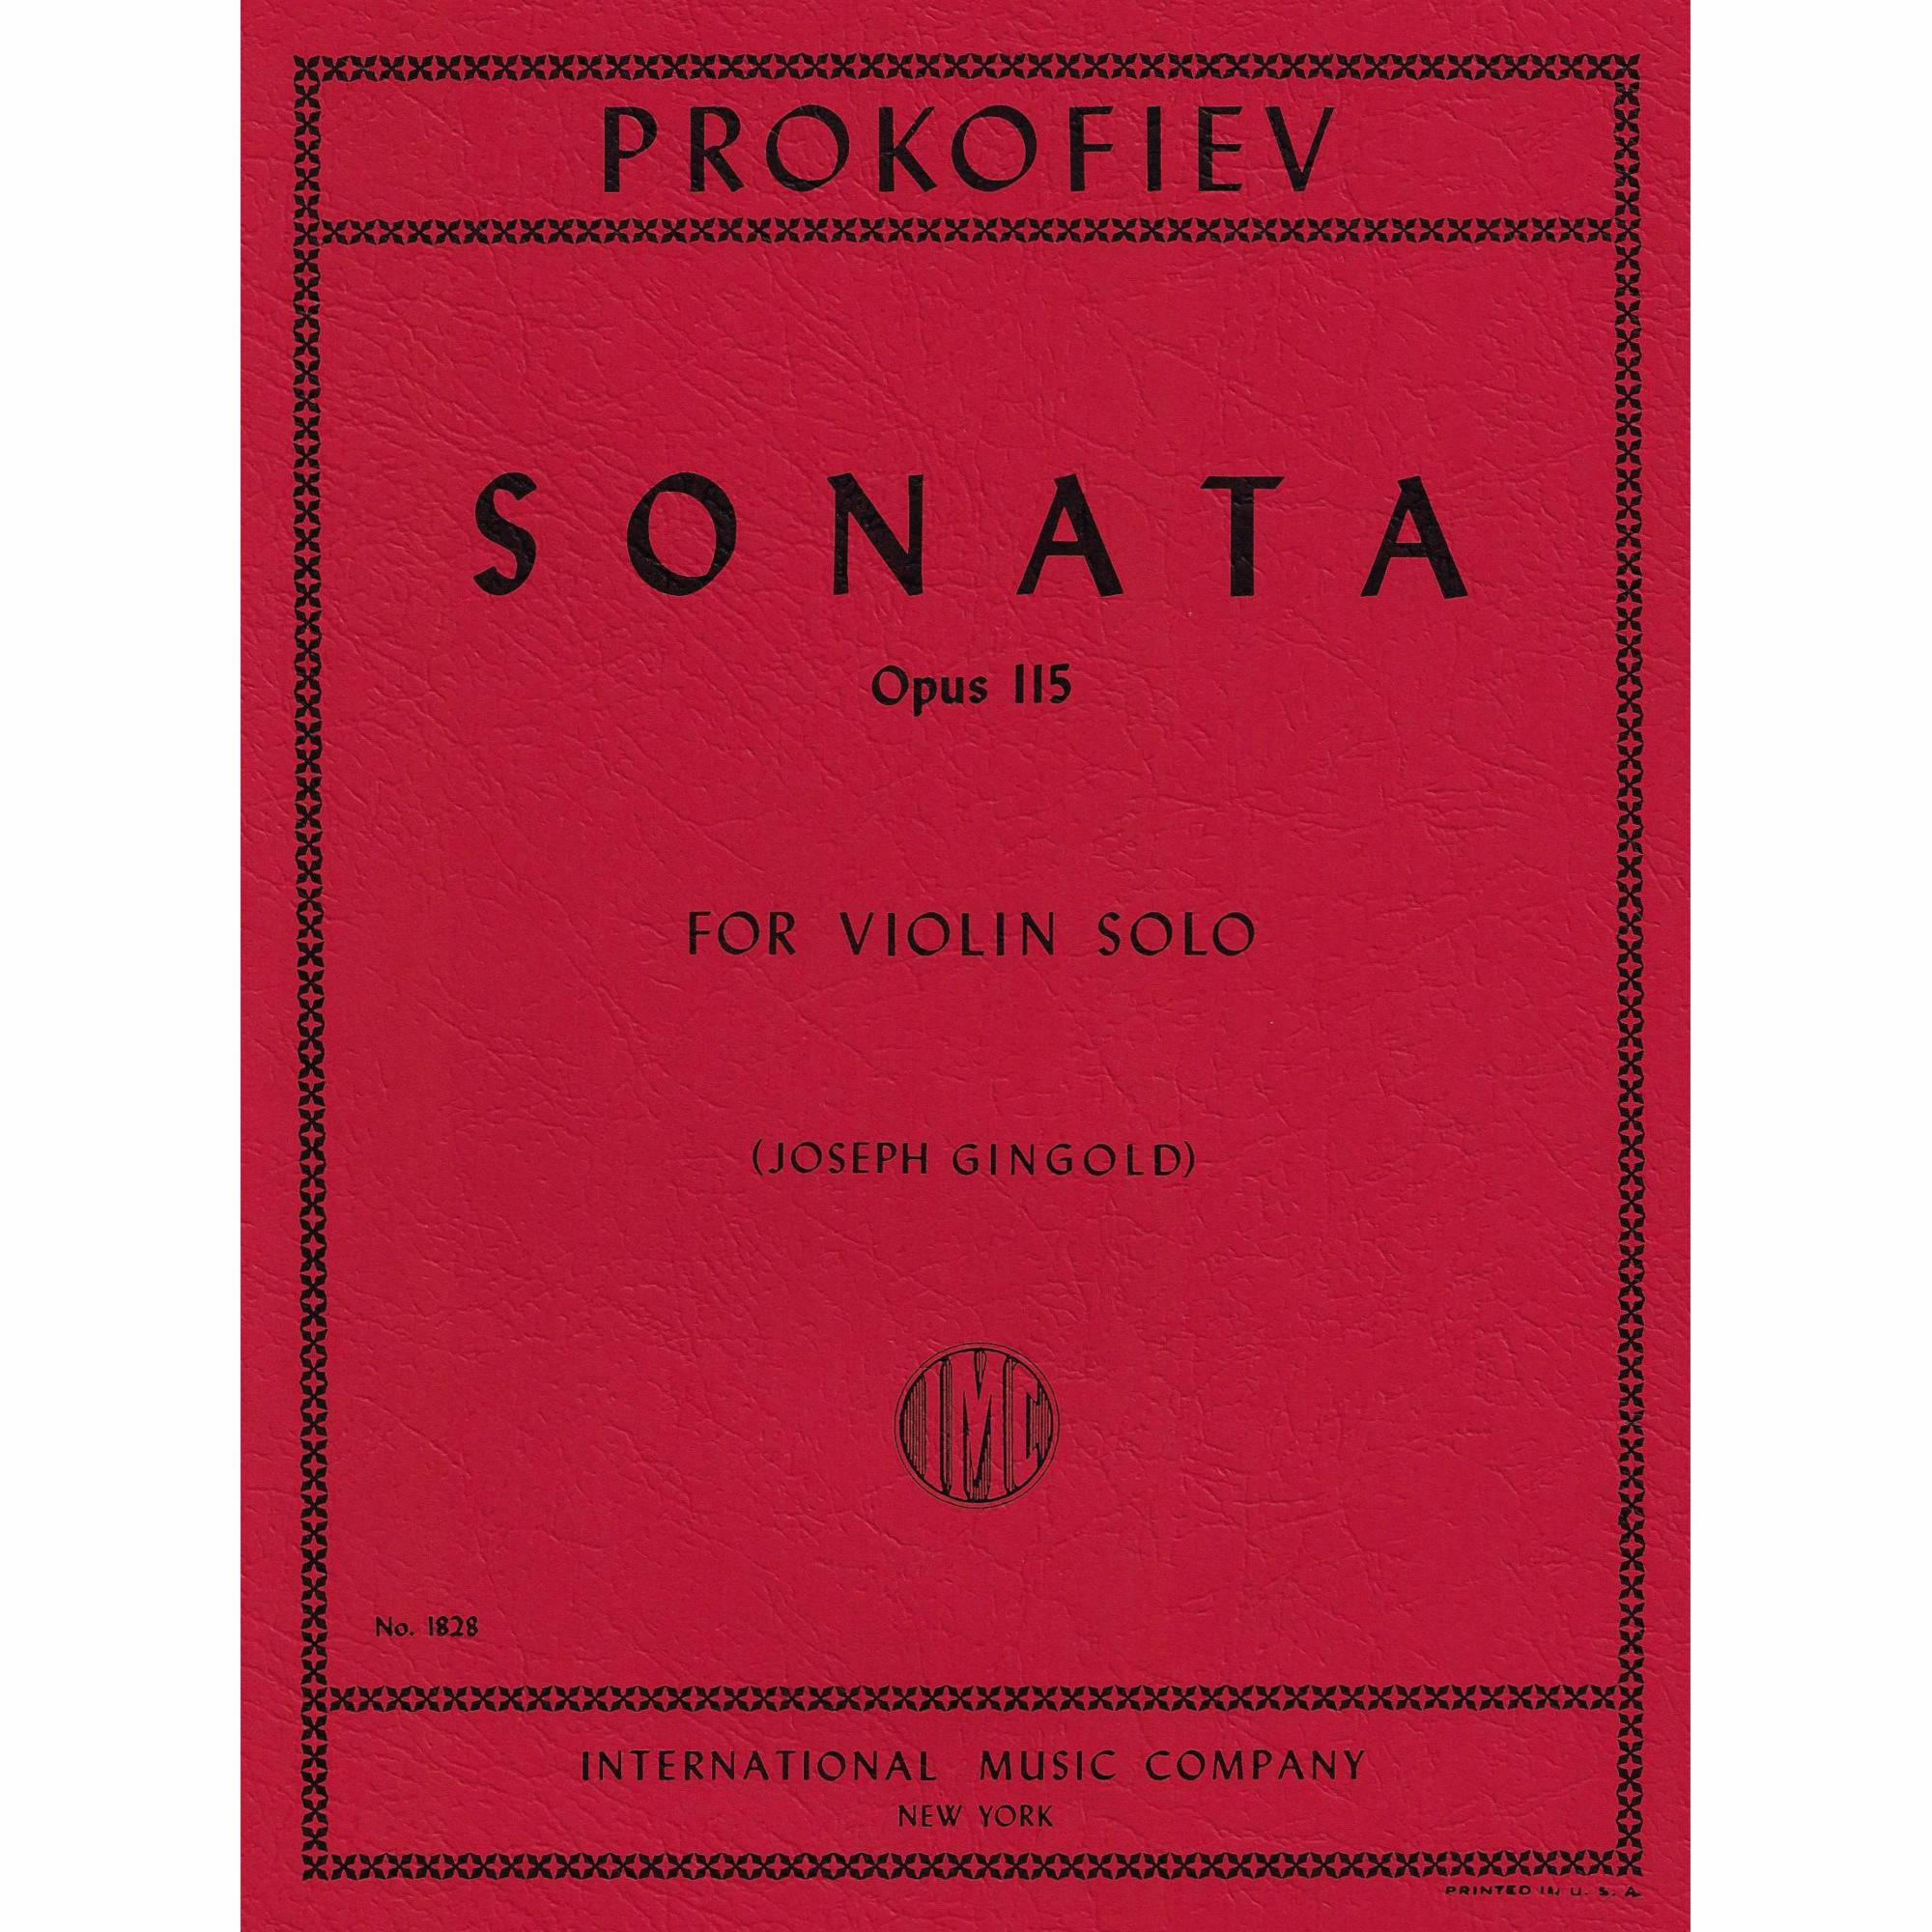 Prokofiev -- Sonata, Op. 115 for Solo Violin